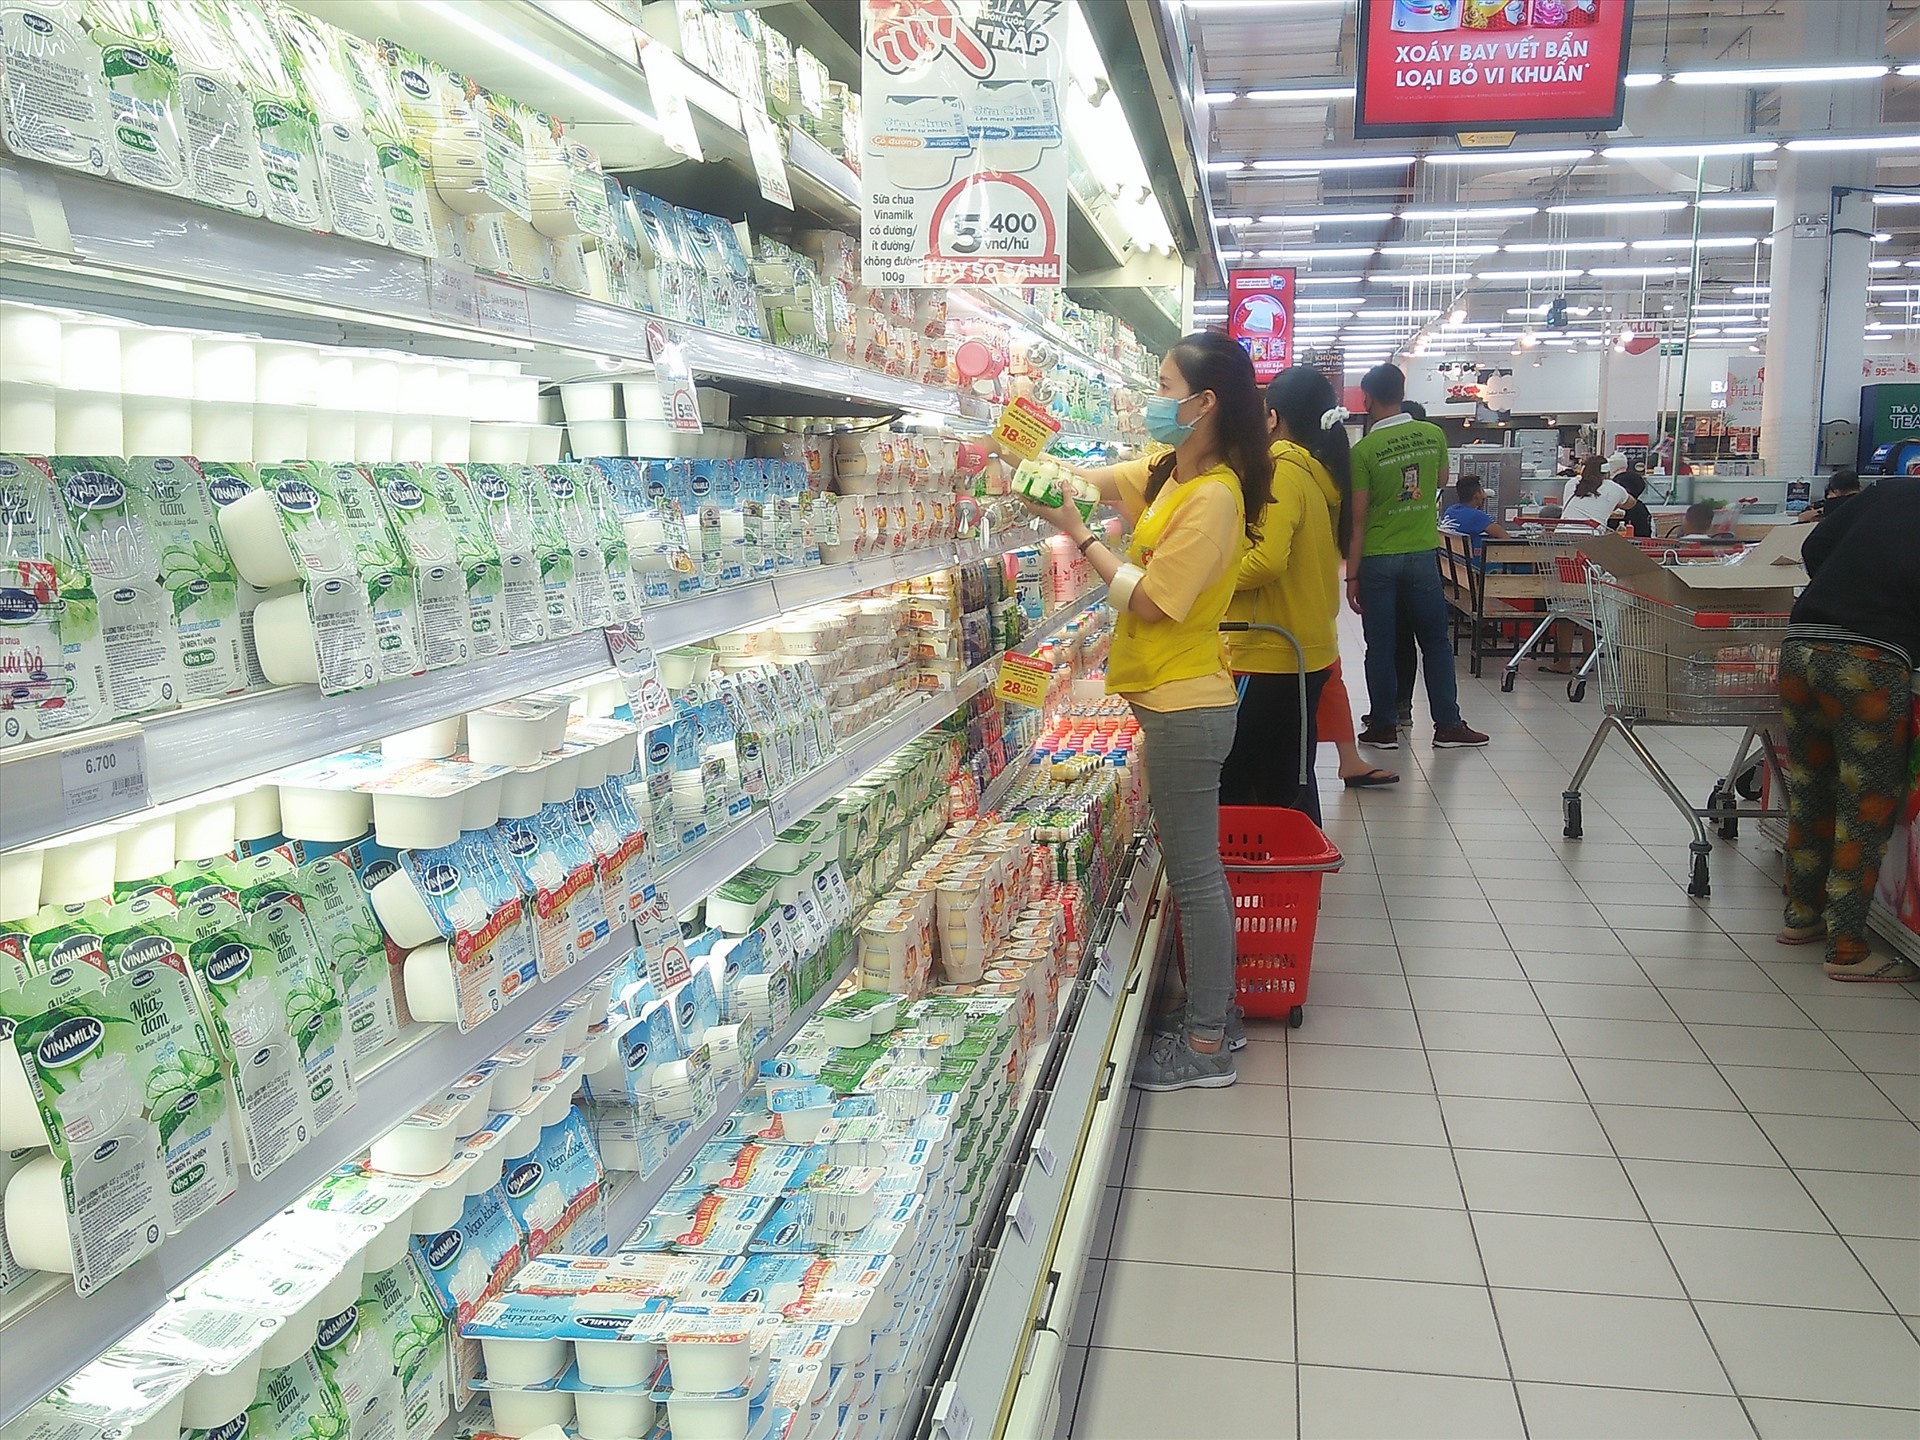 Sữa chua cũng được gười dân chọn lựa để giải nhiệt trời nắng nóng tại siêu thị Big C. Ảnh: Minh Khang